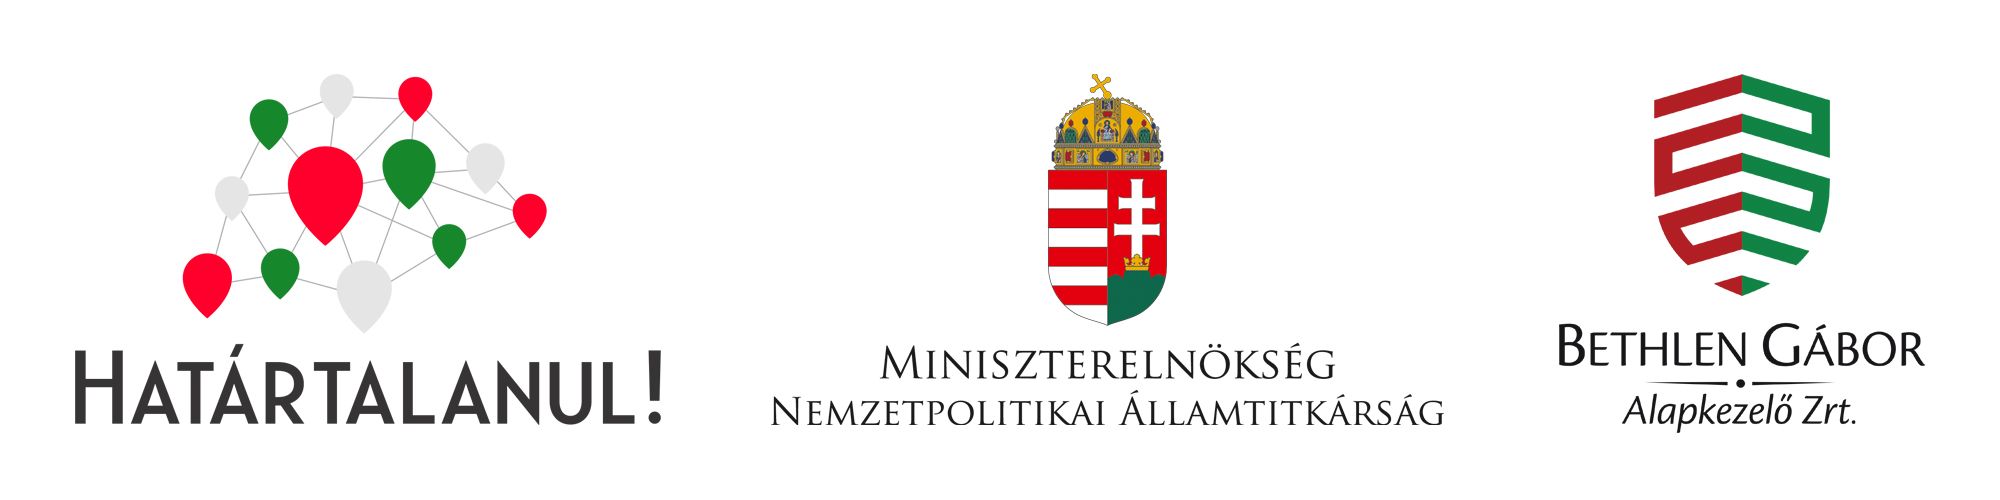 Határtalanul!, Miniszterelnökség Nemzetpolitikai Államtitkárság, BGA hármas logó